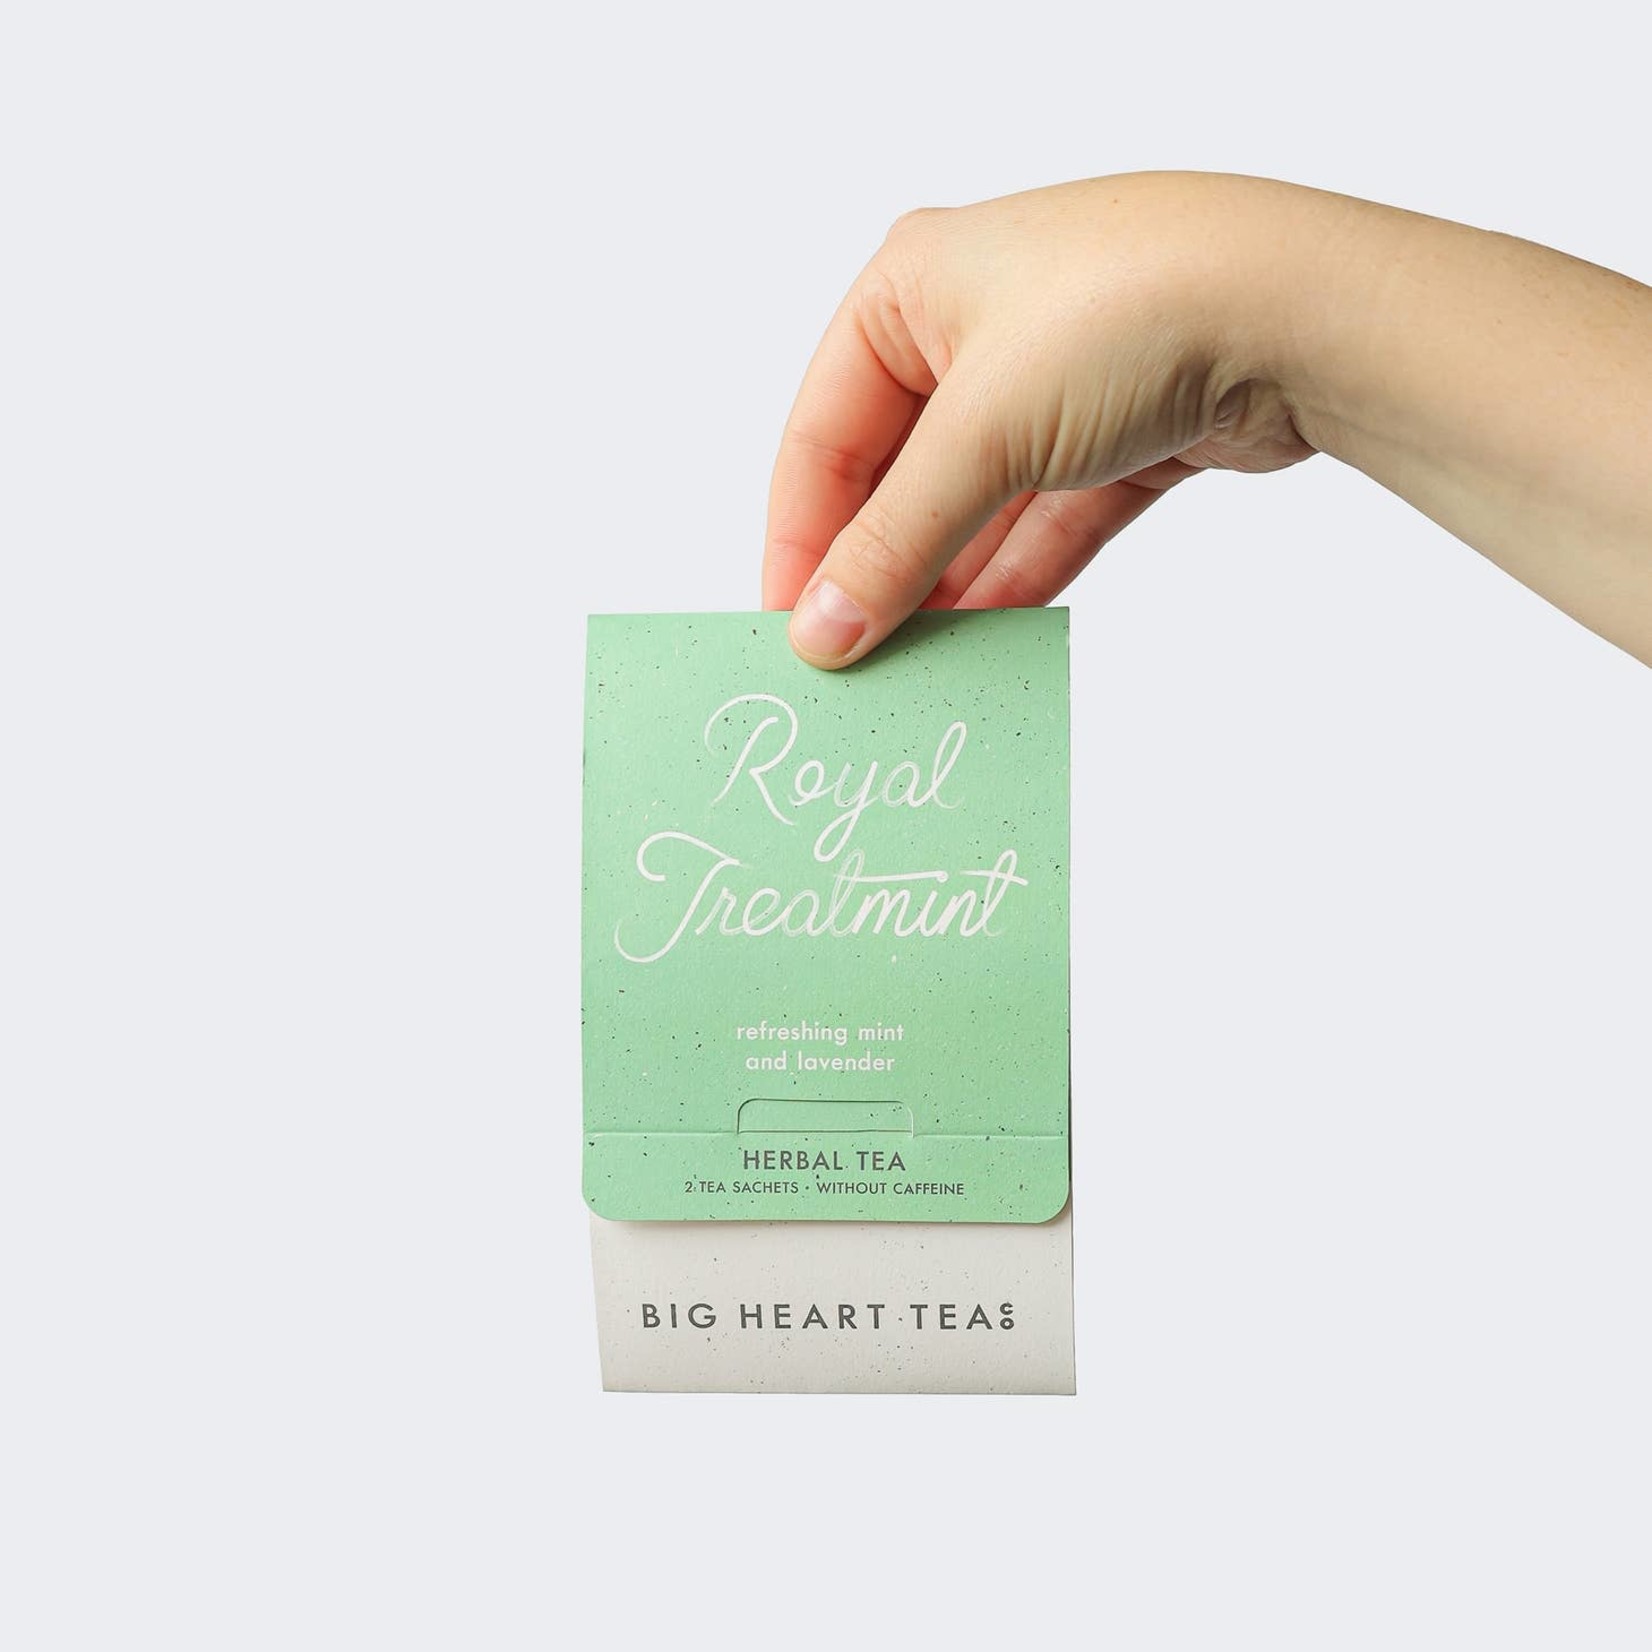 Big Heart Tea Co. Big Heart Tea Co. - Royal Treatmint Sampler Tea for Two